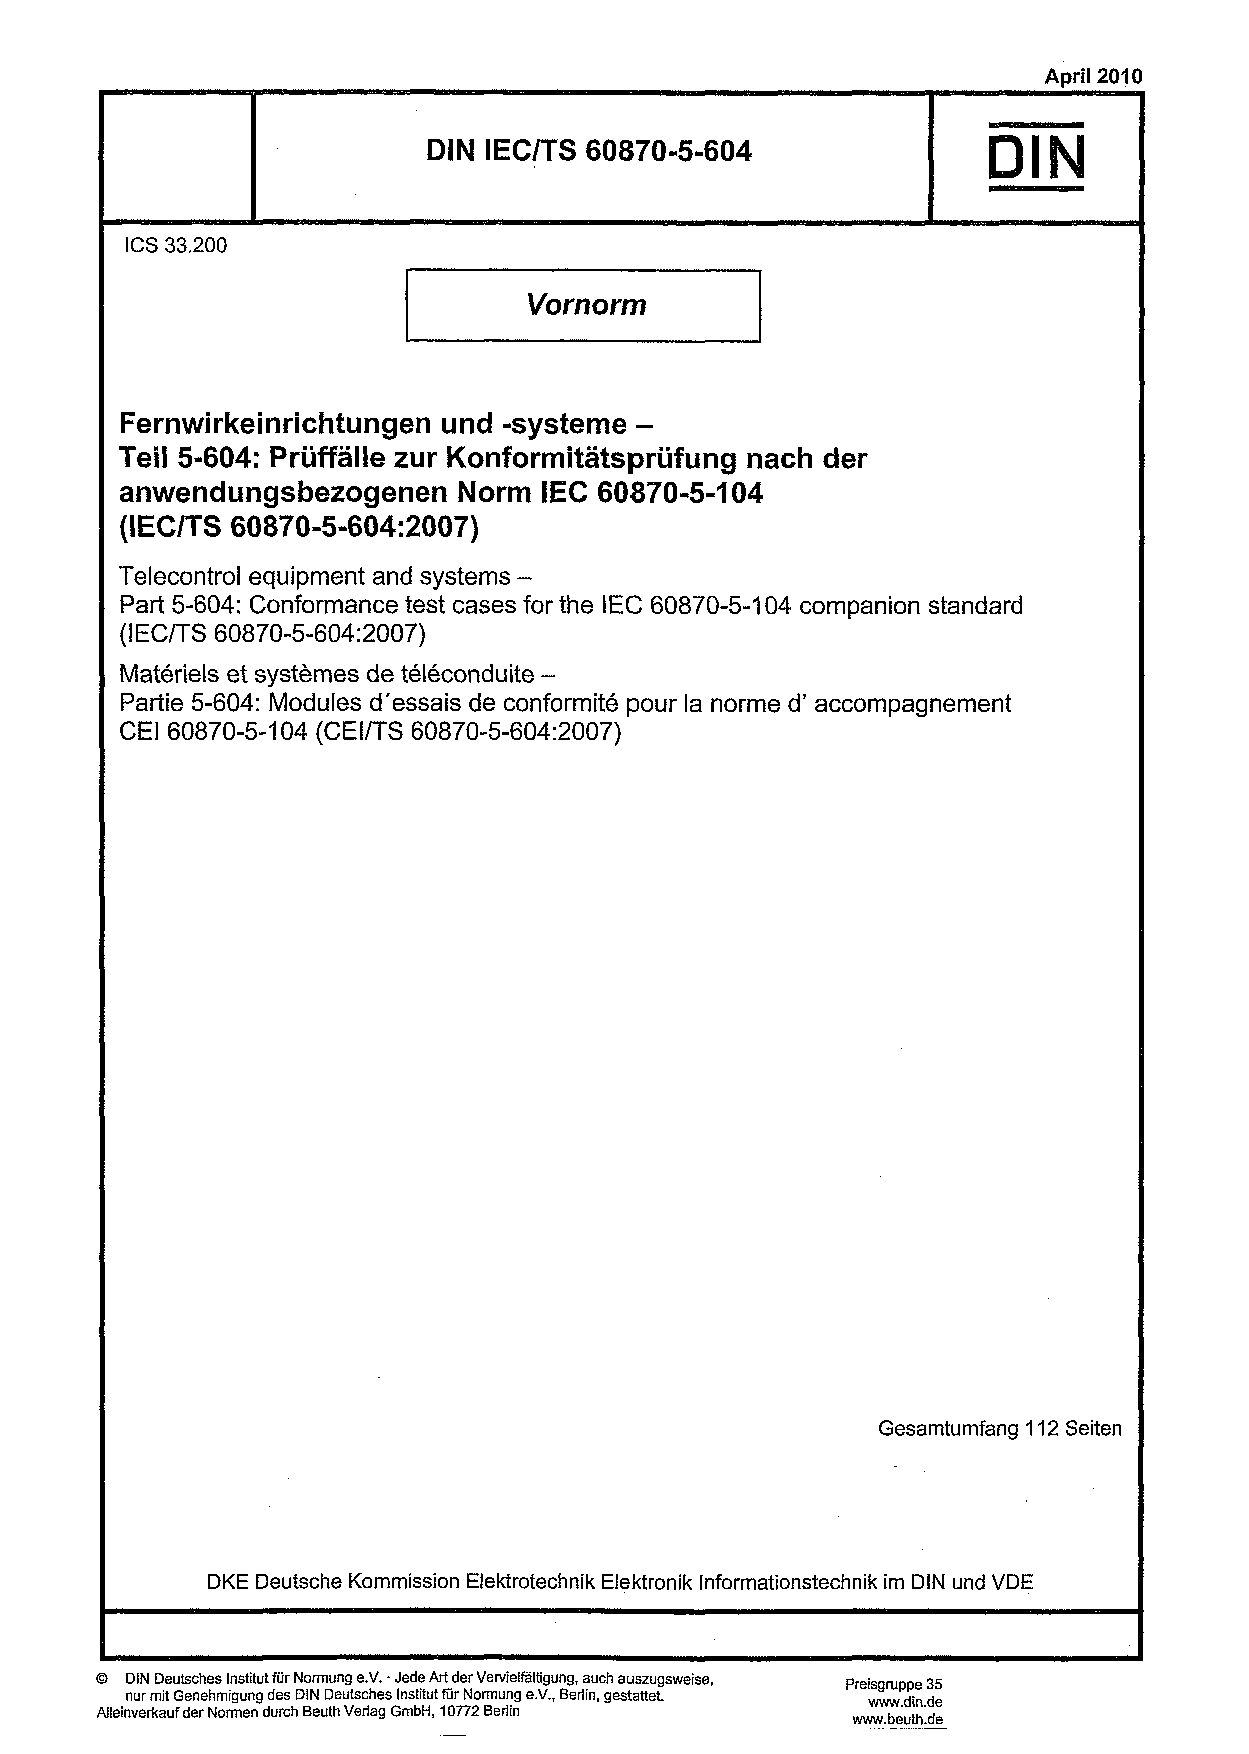 DIN IEC/TS 60870-5-604:2010封面图